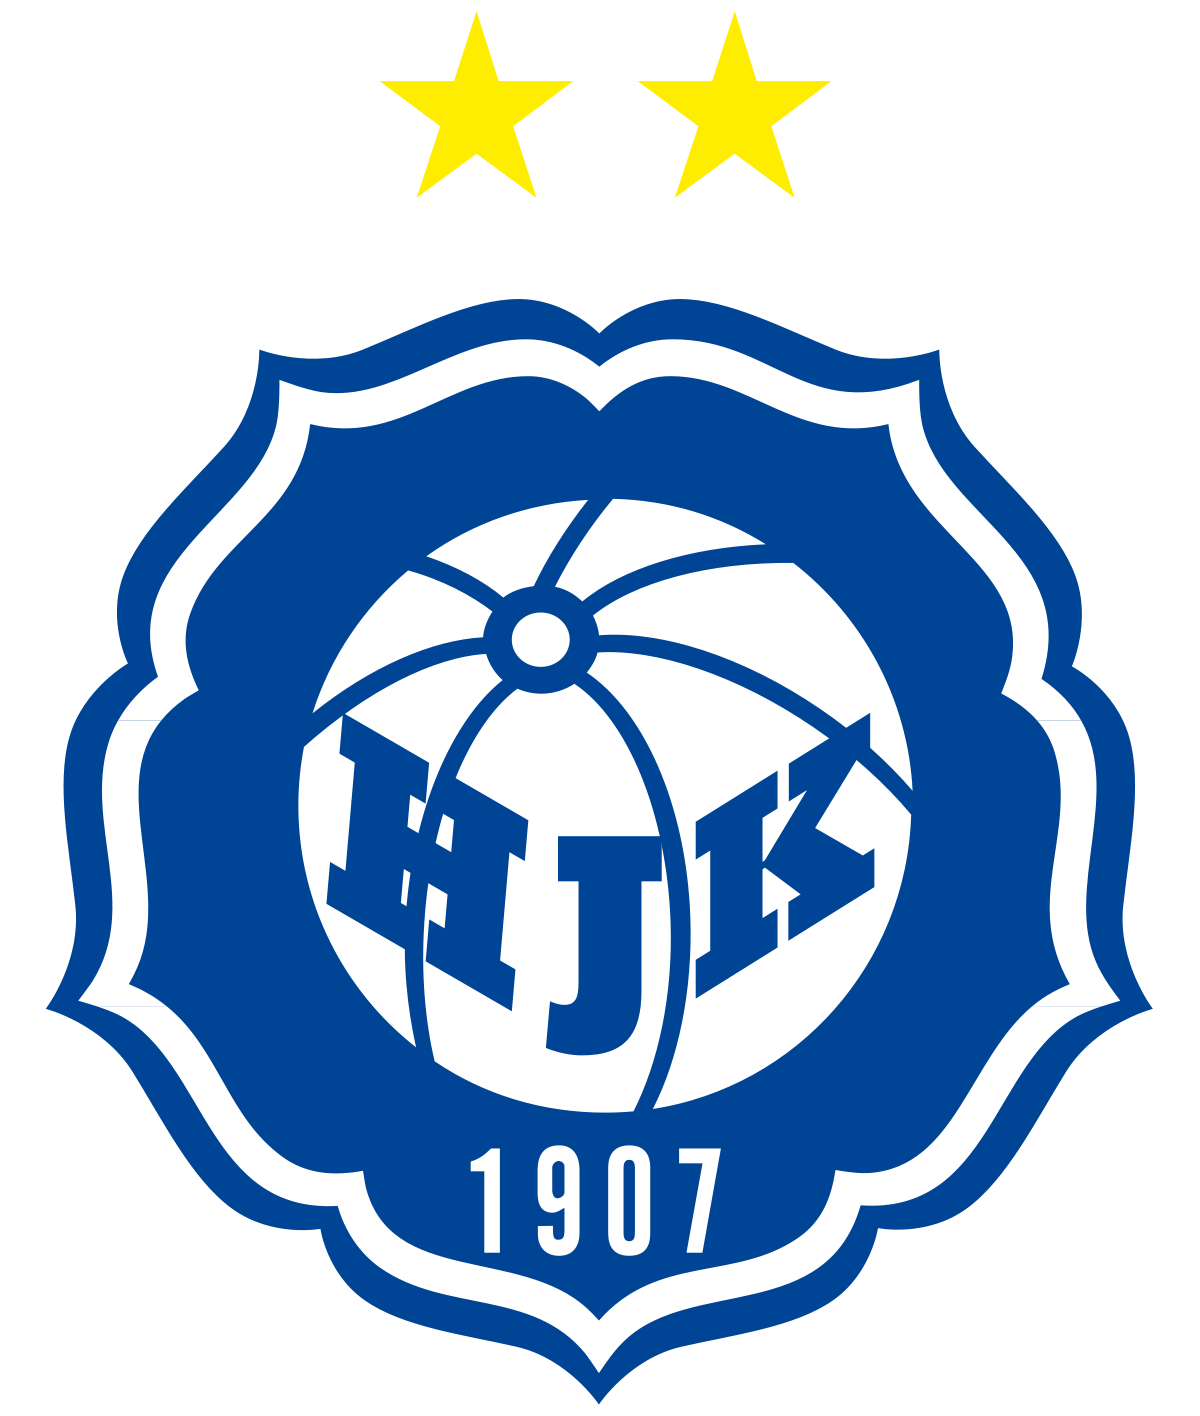 HJK Helsinki W logo